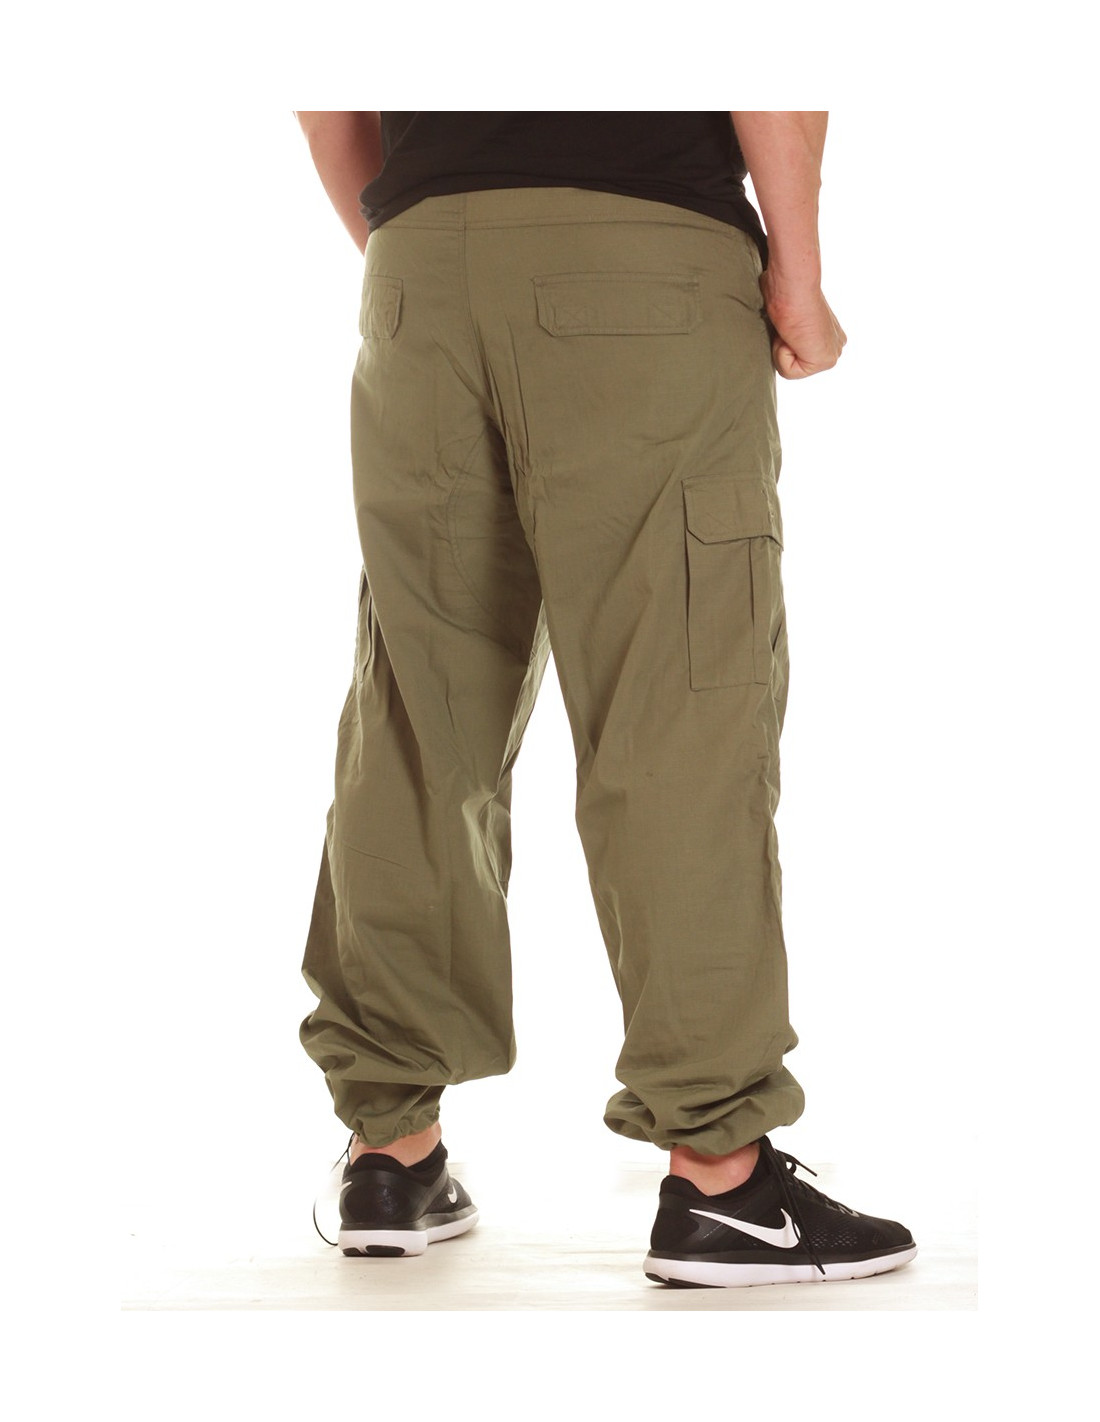 BSAT Combat Cargo Pants Olive - BSATCP18003